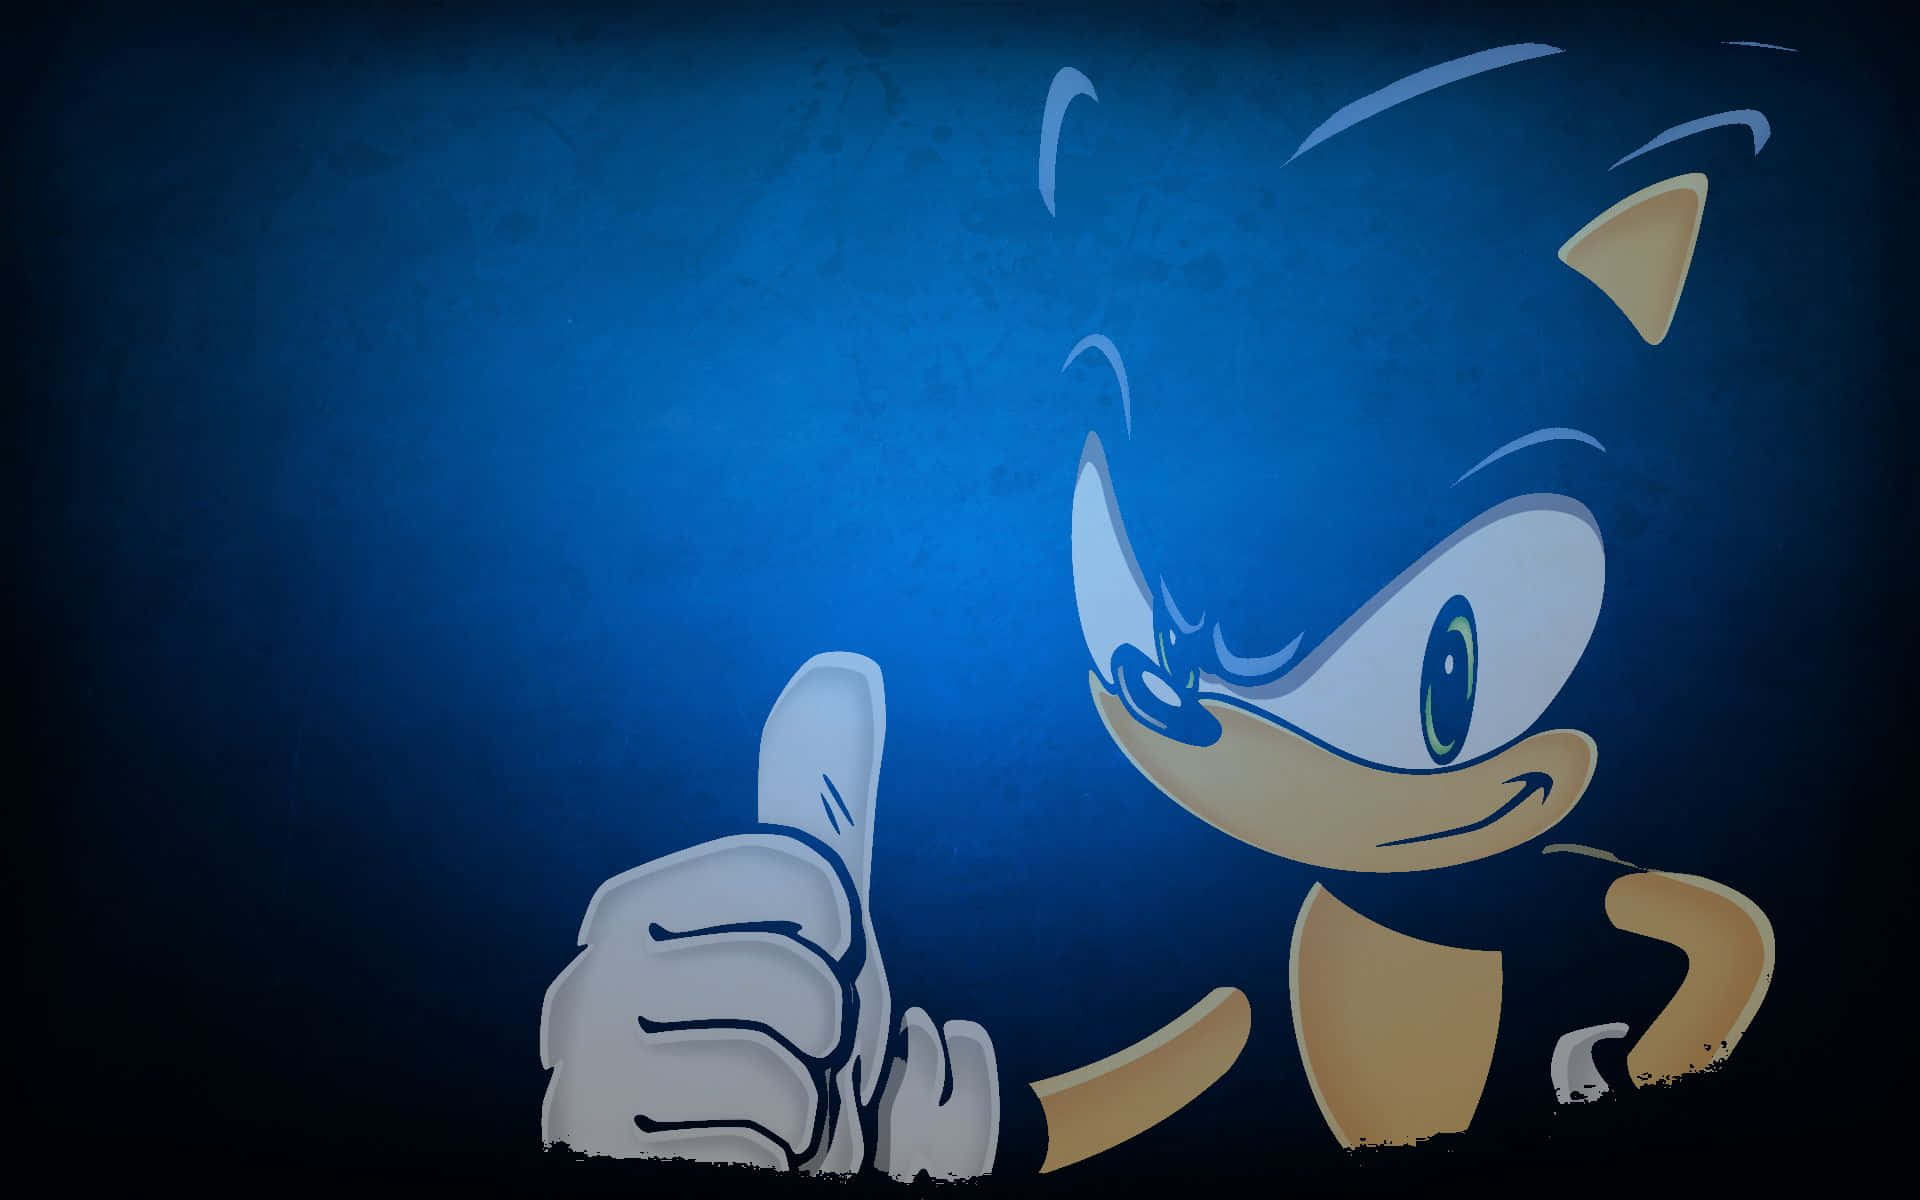 Sonic the Hedgehog races through City Escape Wallpaper